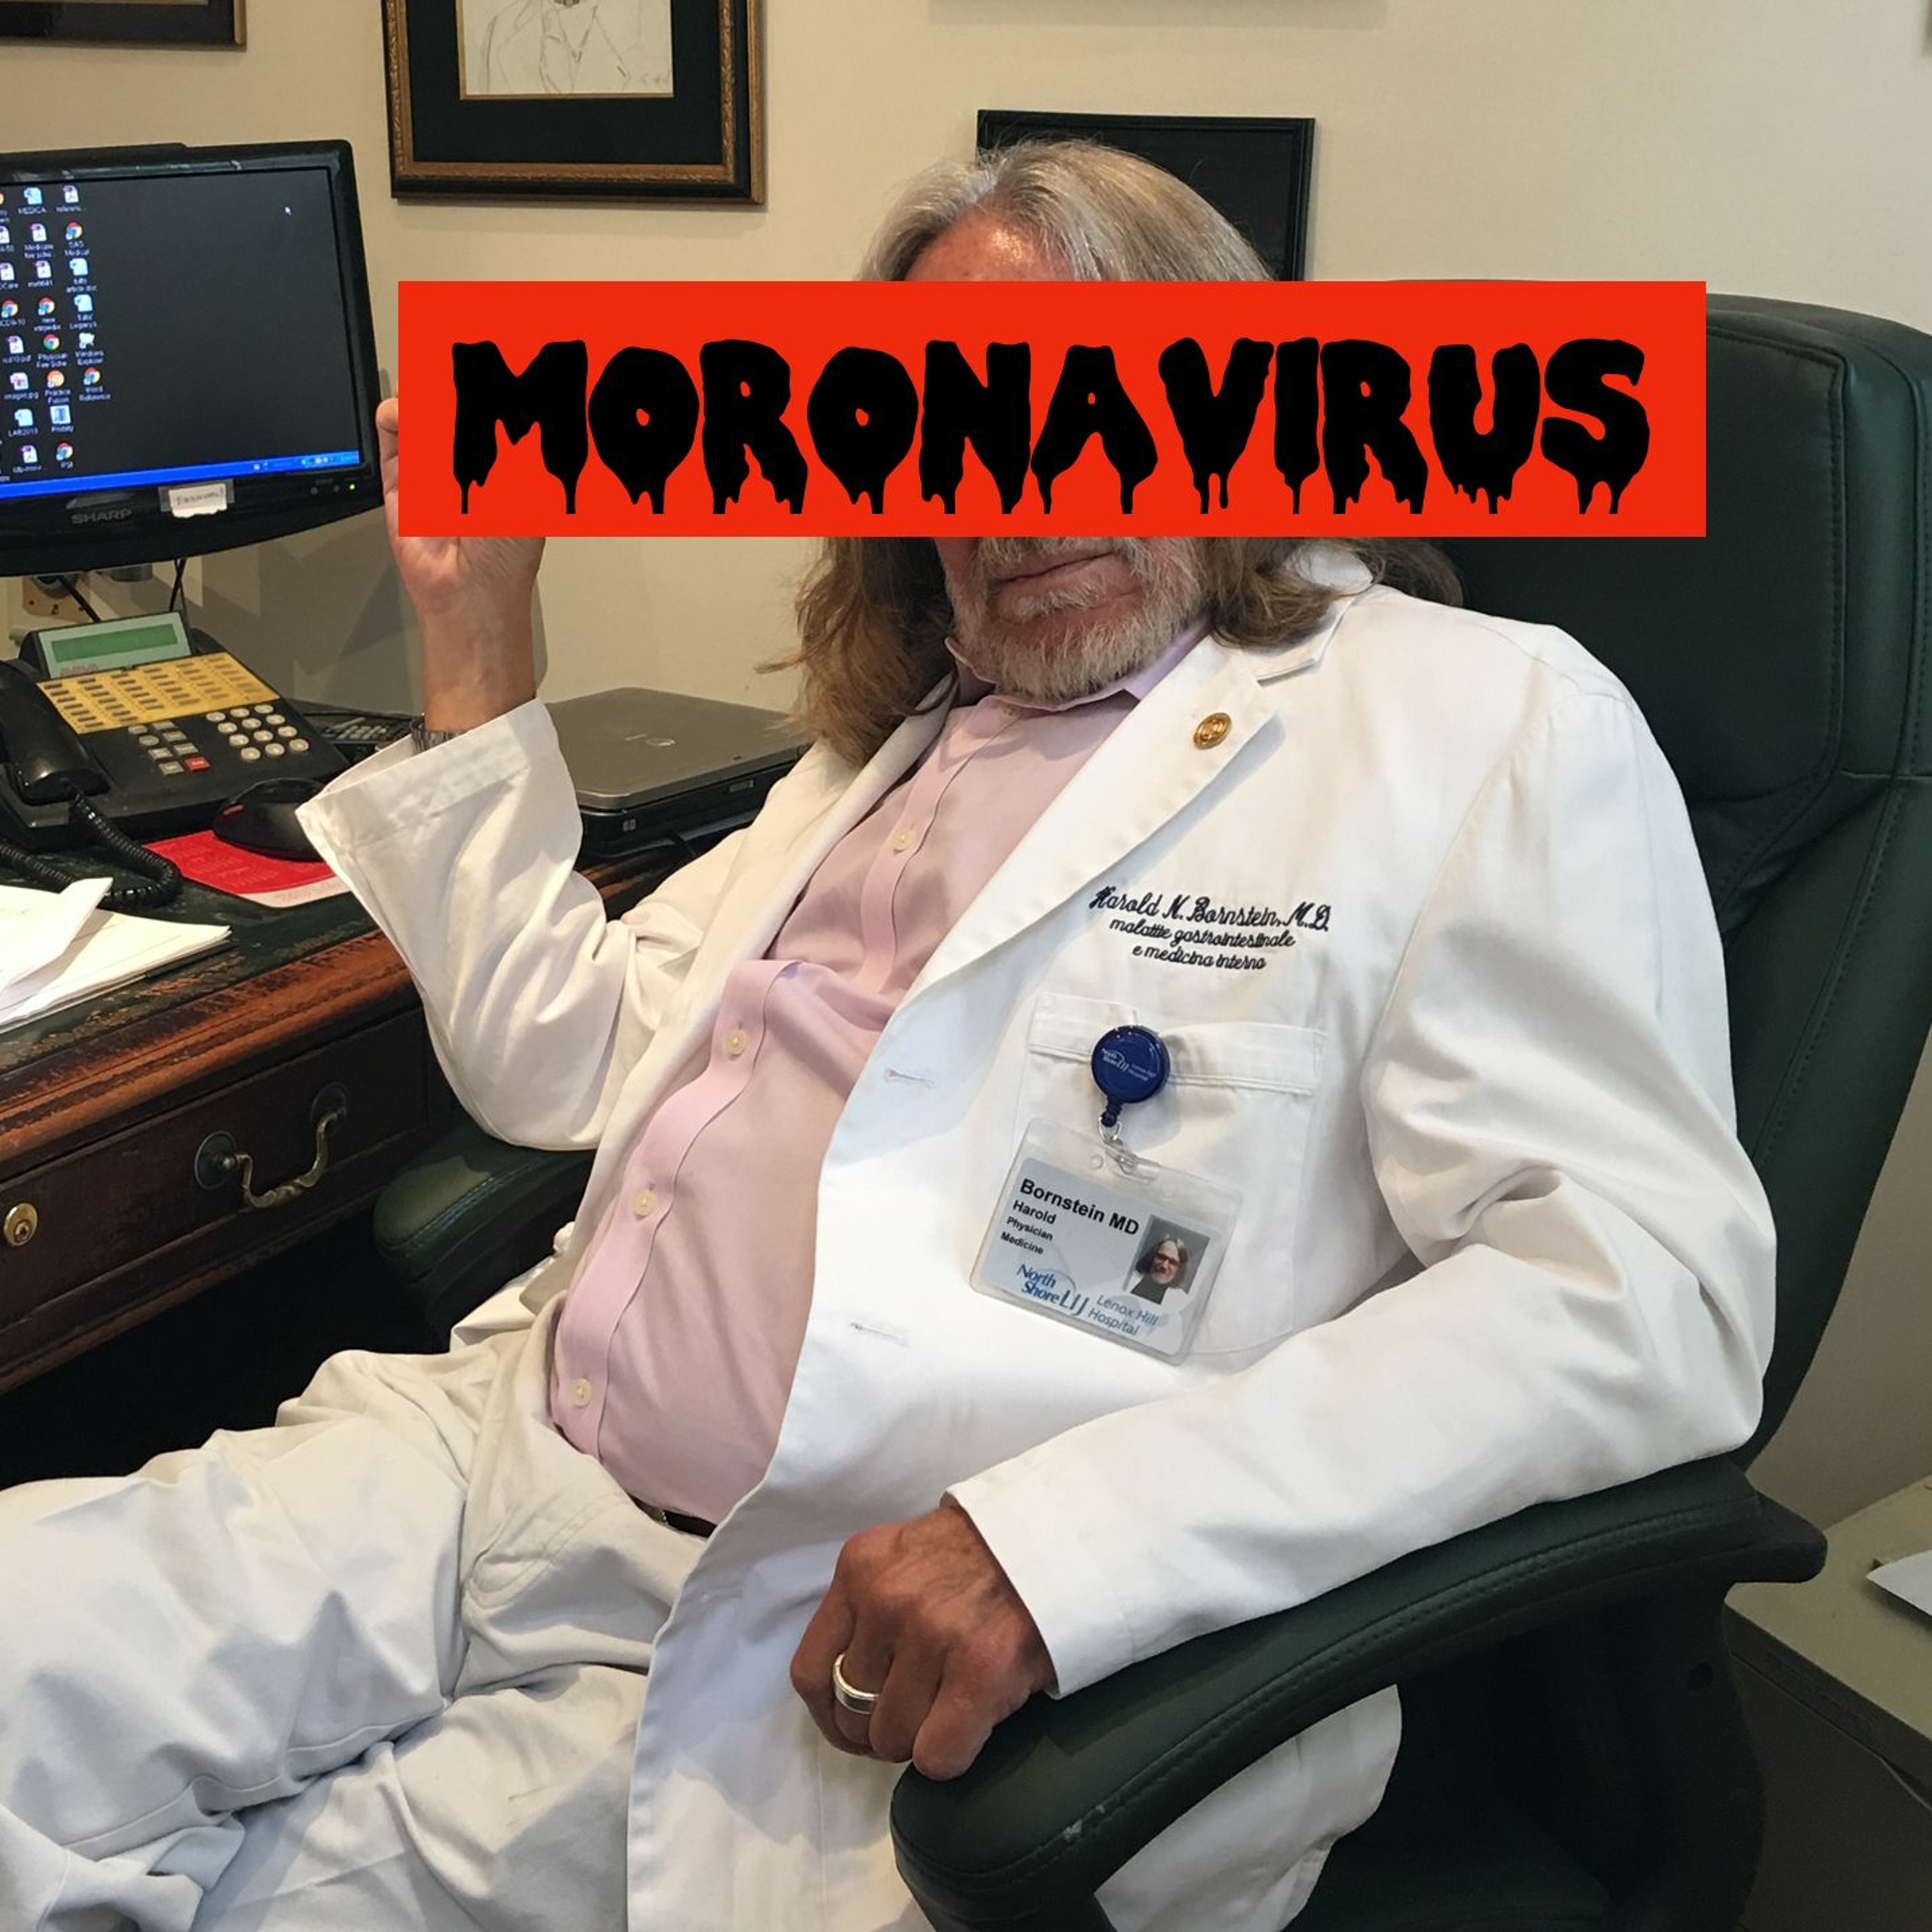 Episode 40: Moronavirus (teaser)